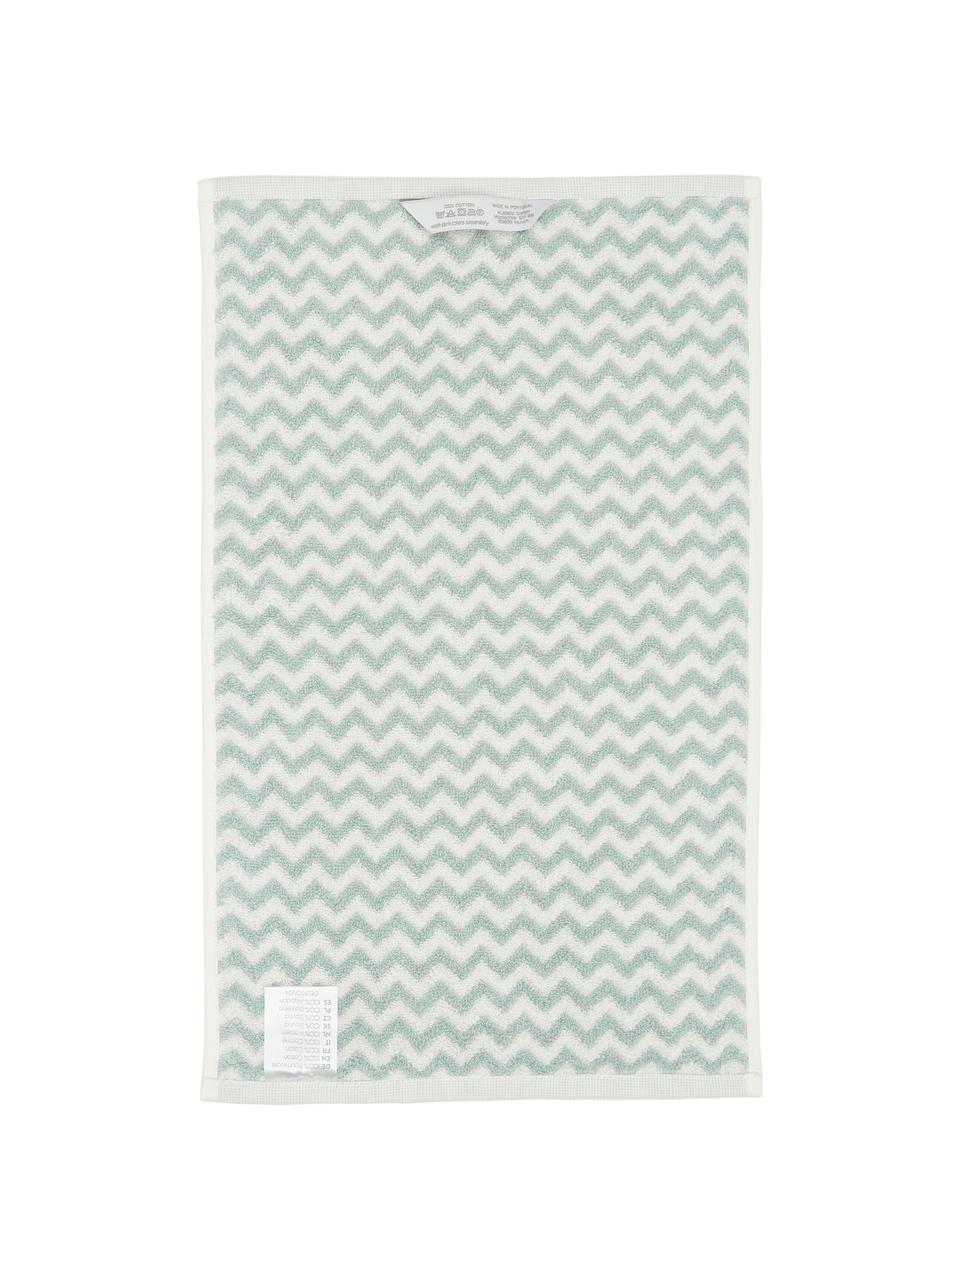 Handdoek Liv met zigzag patroon, 2 stuks, 100% katoen, middelzware kwaliteit, 550 g/m², Groen, wit, Gastendoekje, B 30 x L 50 cm, 2 stuks